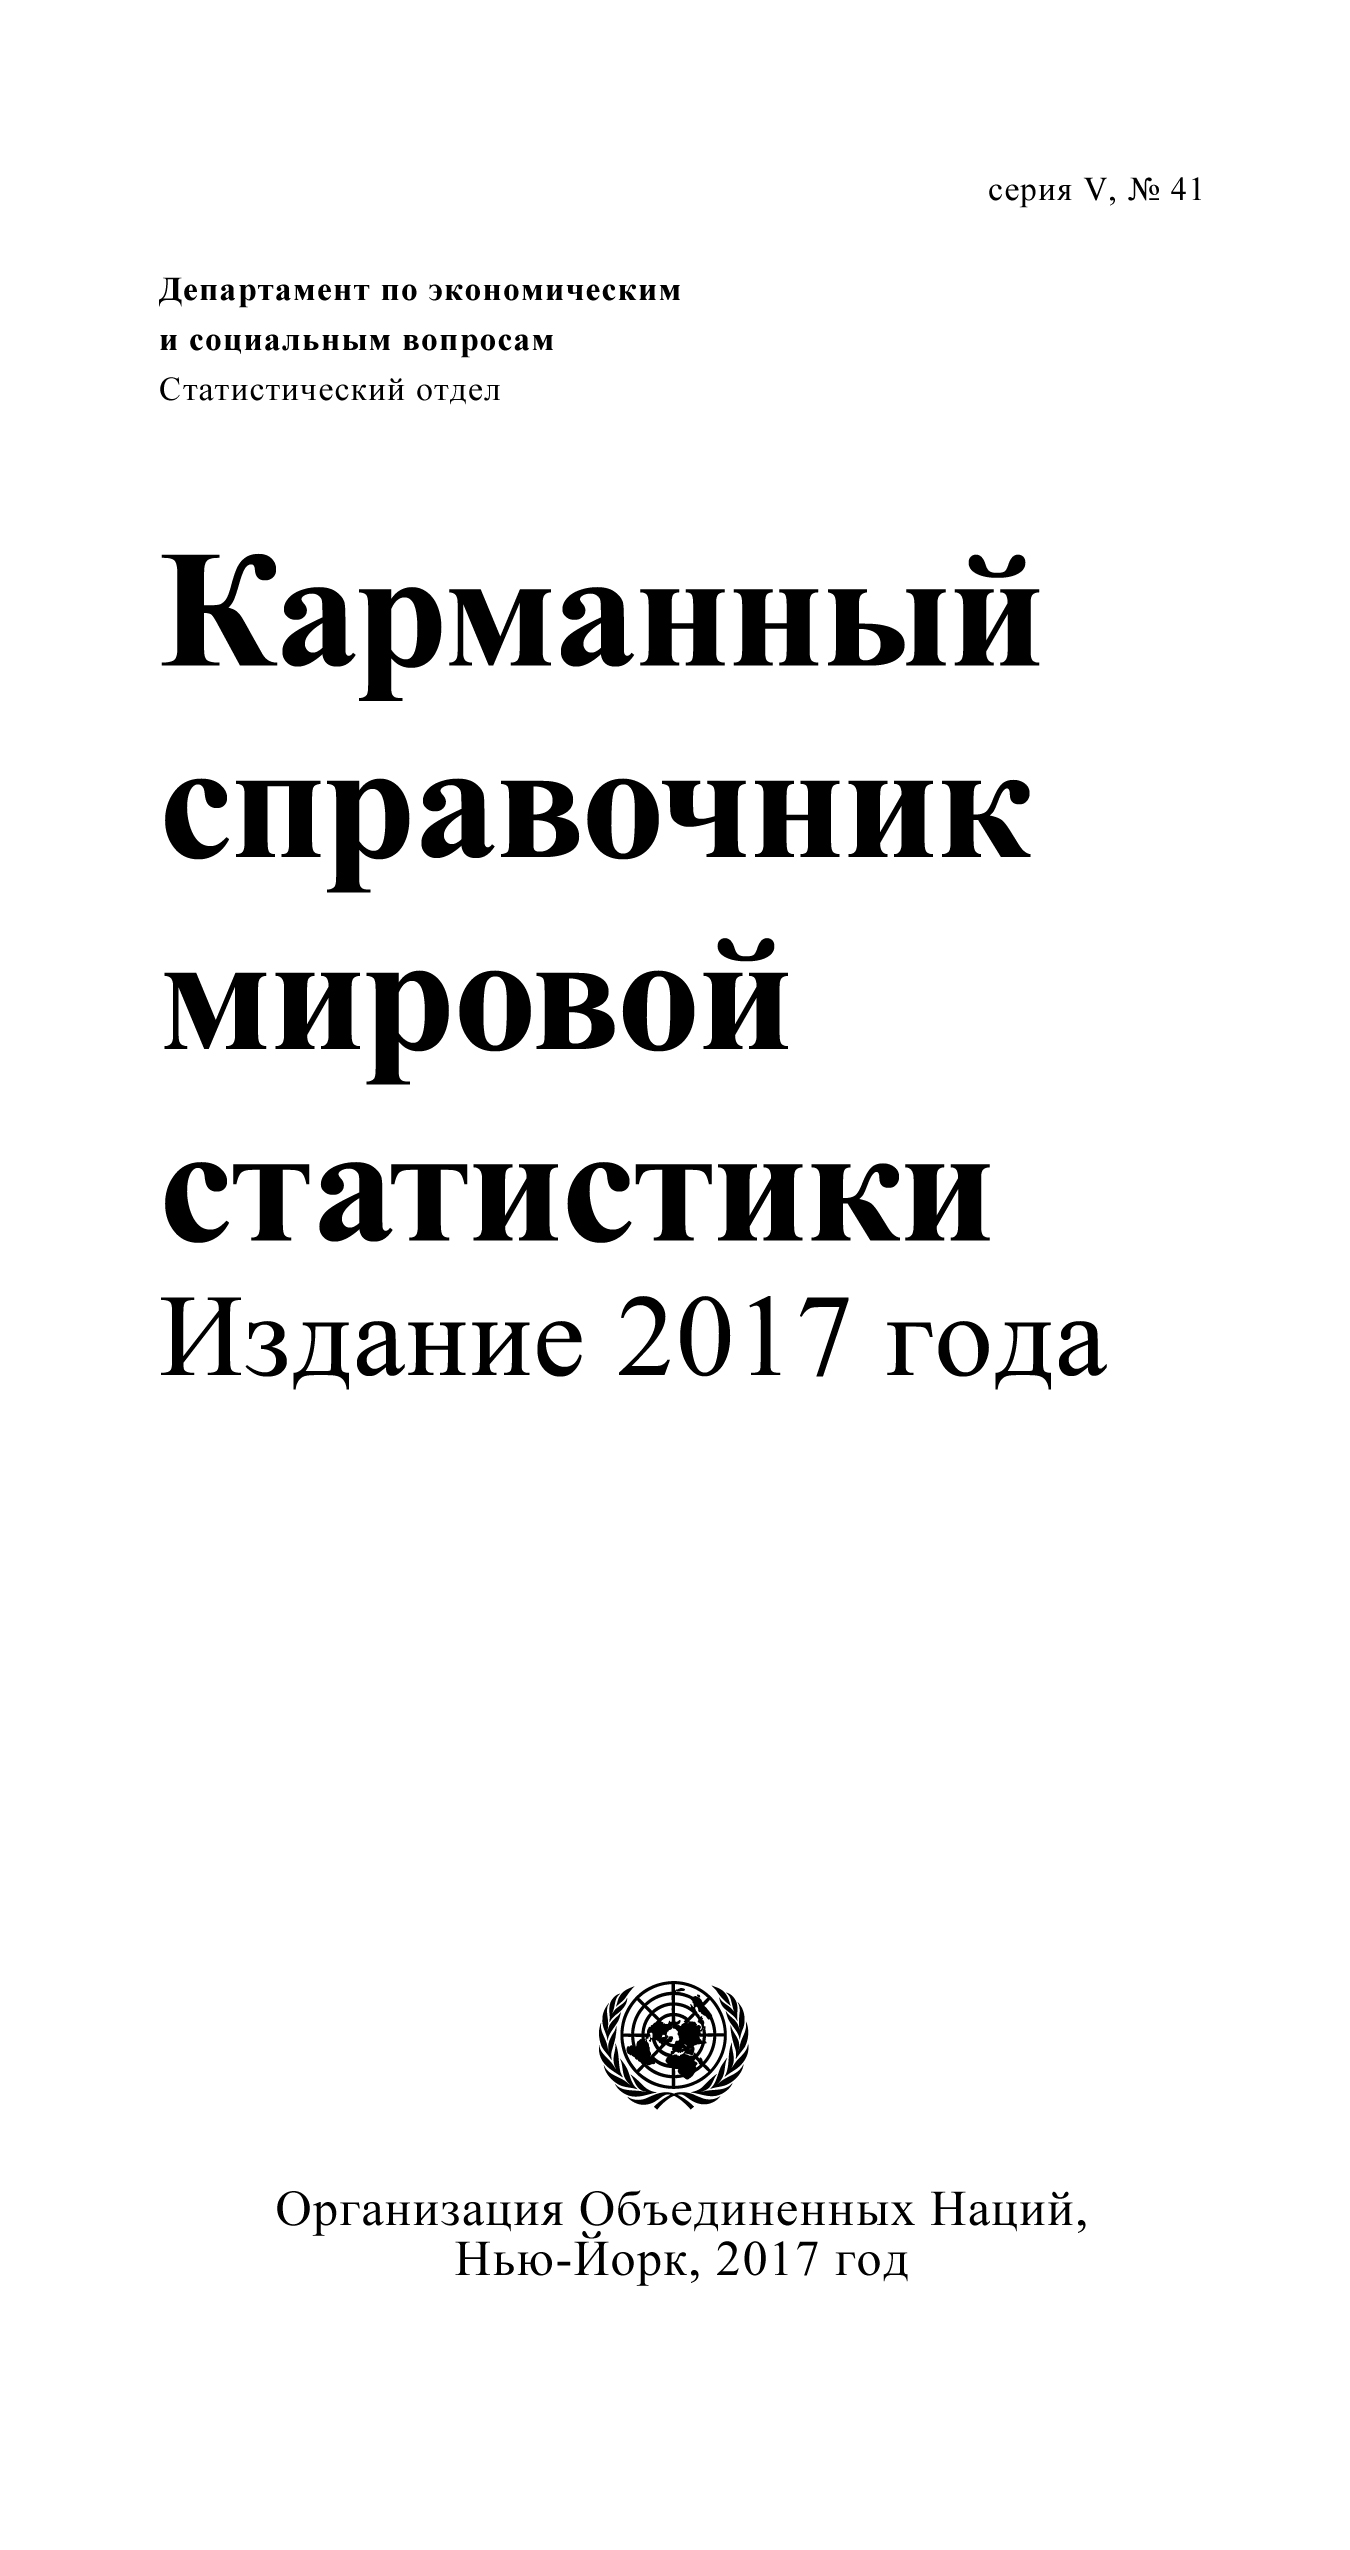 image of Карманный справочник мировой статистики 2017 г.